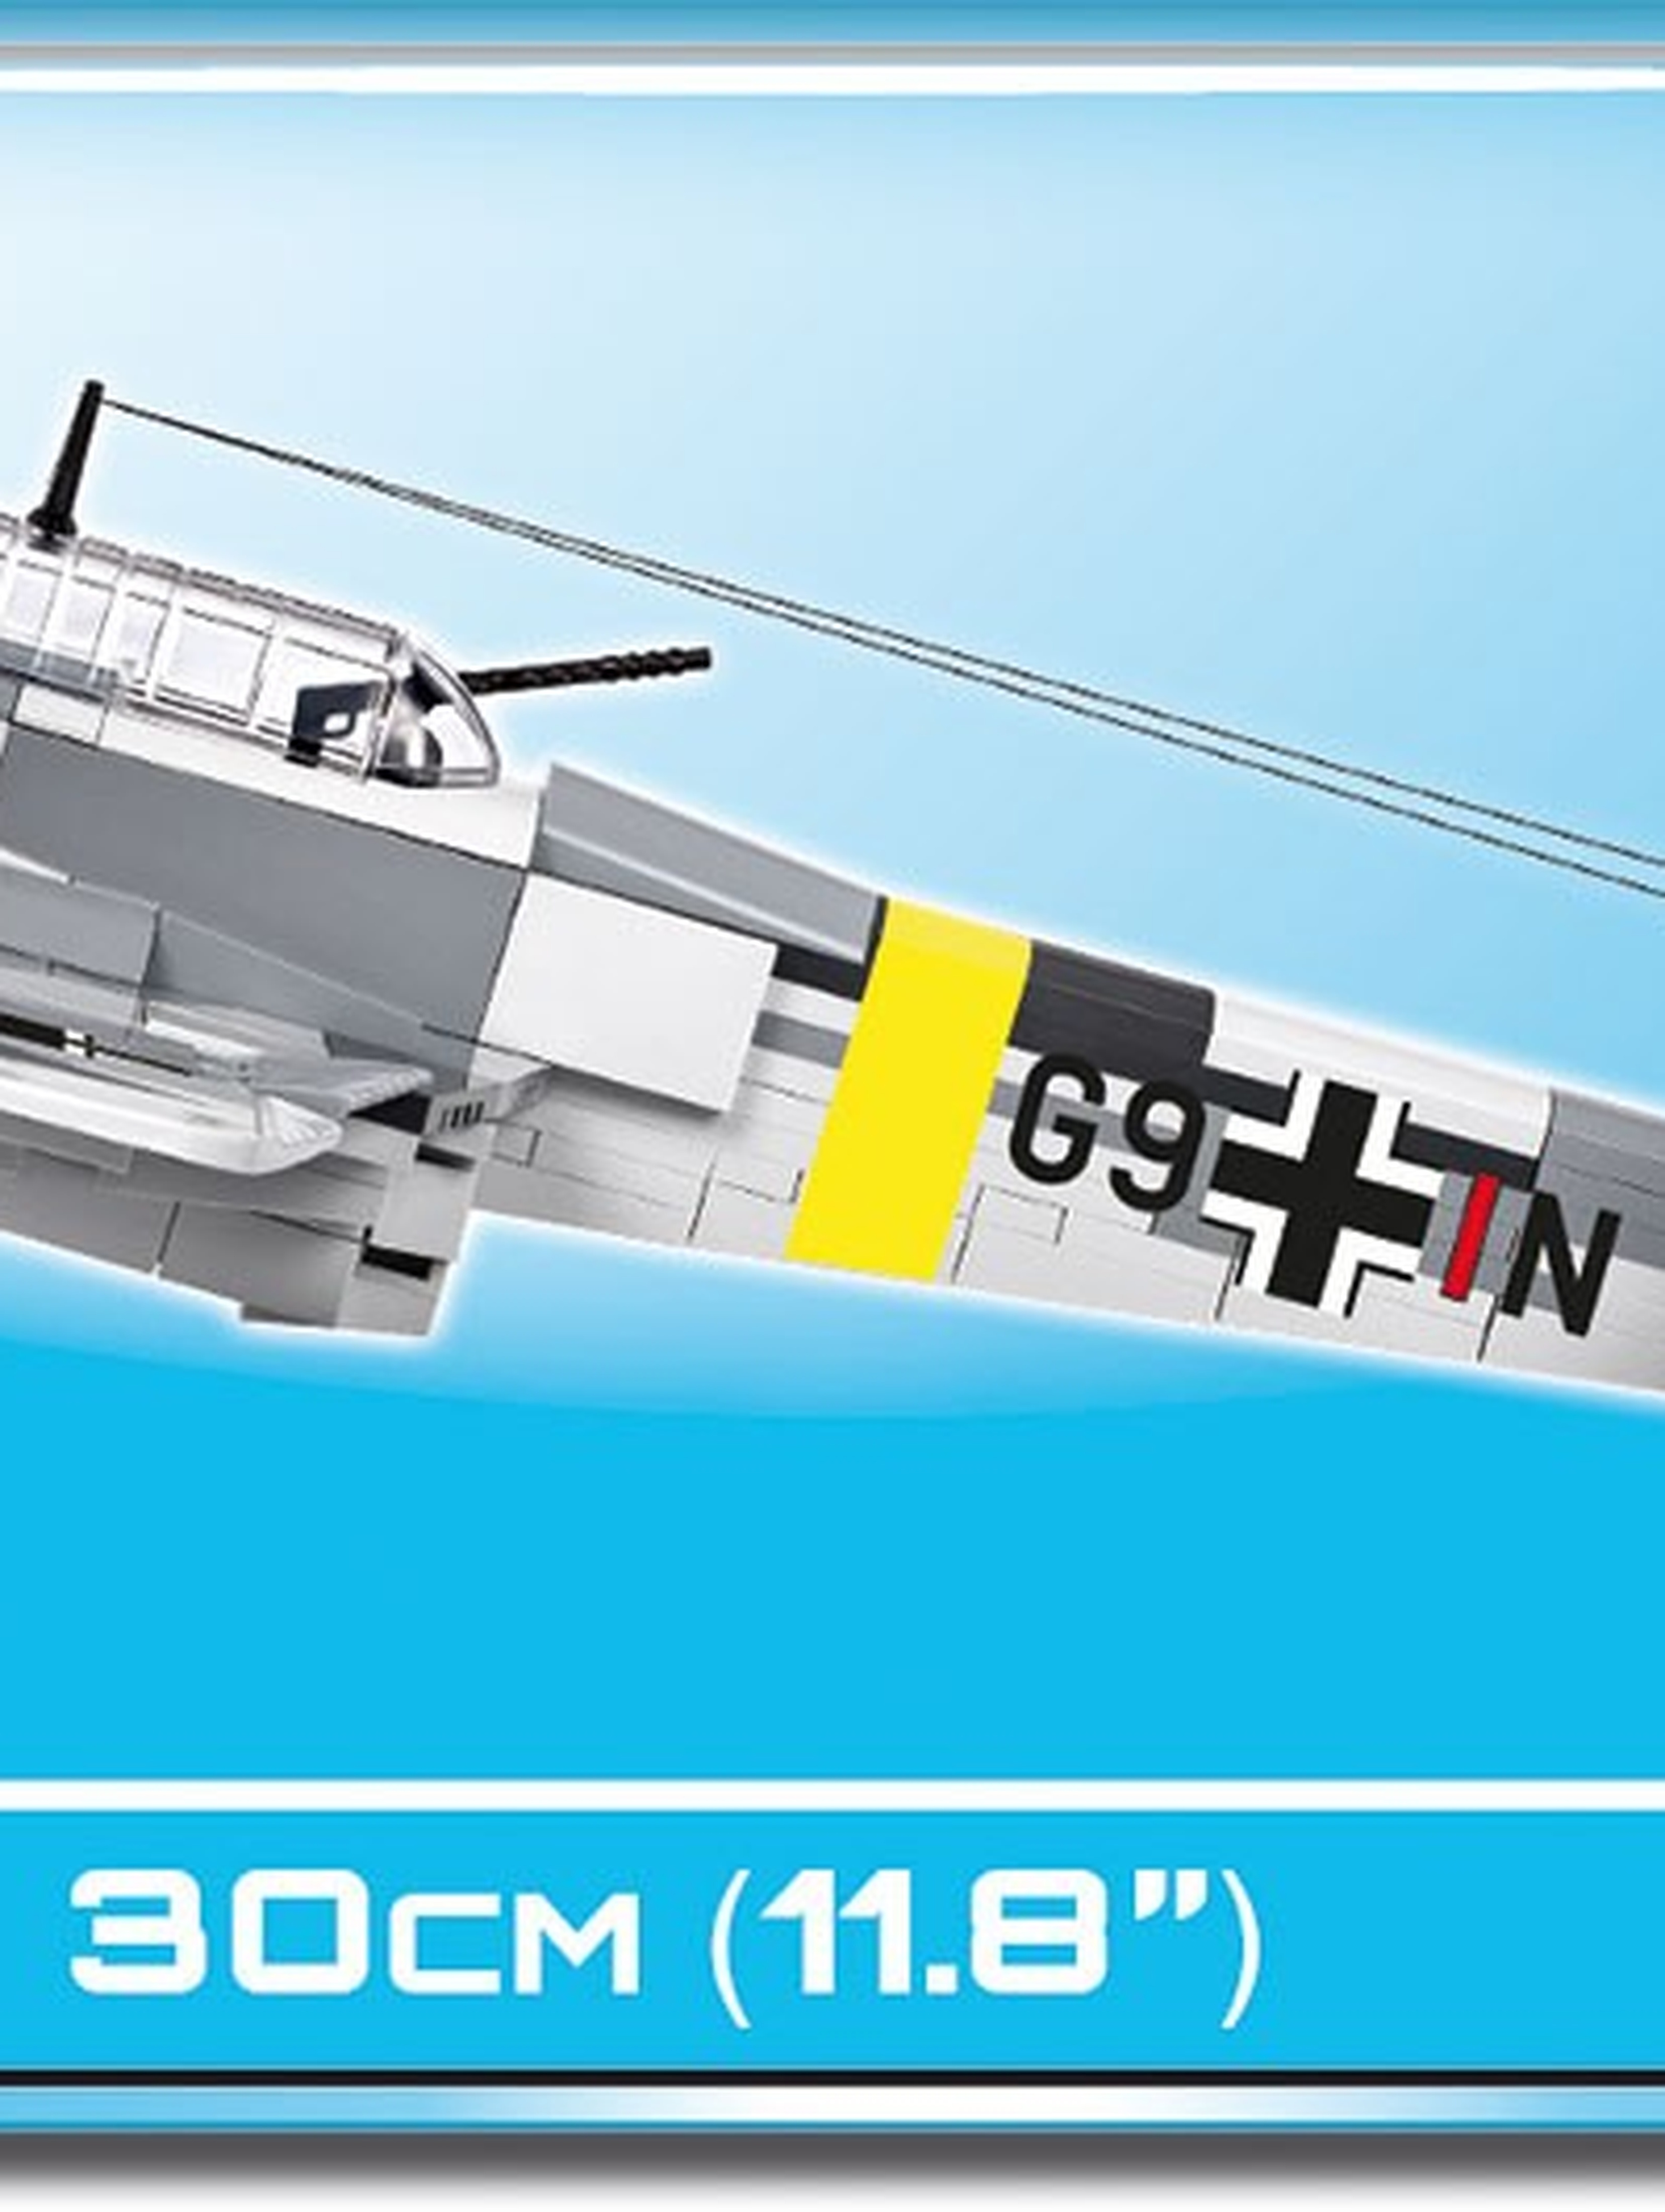 Small Army Messerschmitt Bf 110C